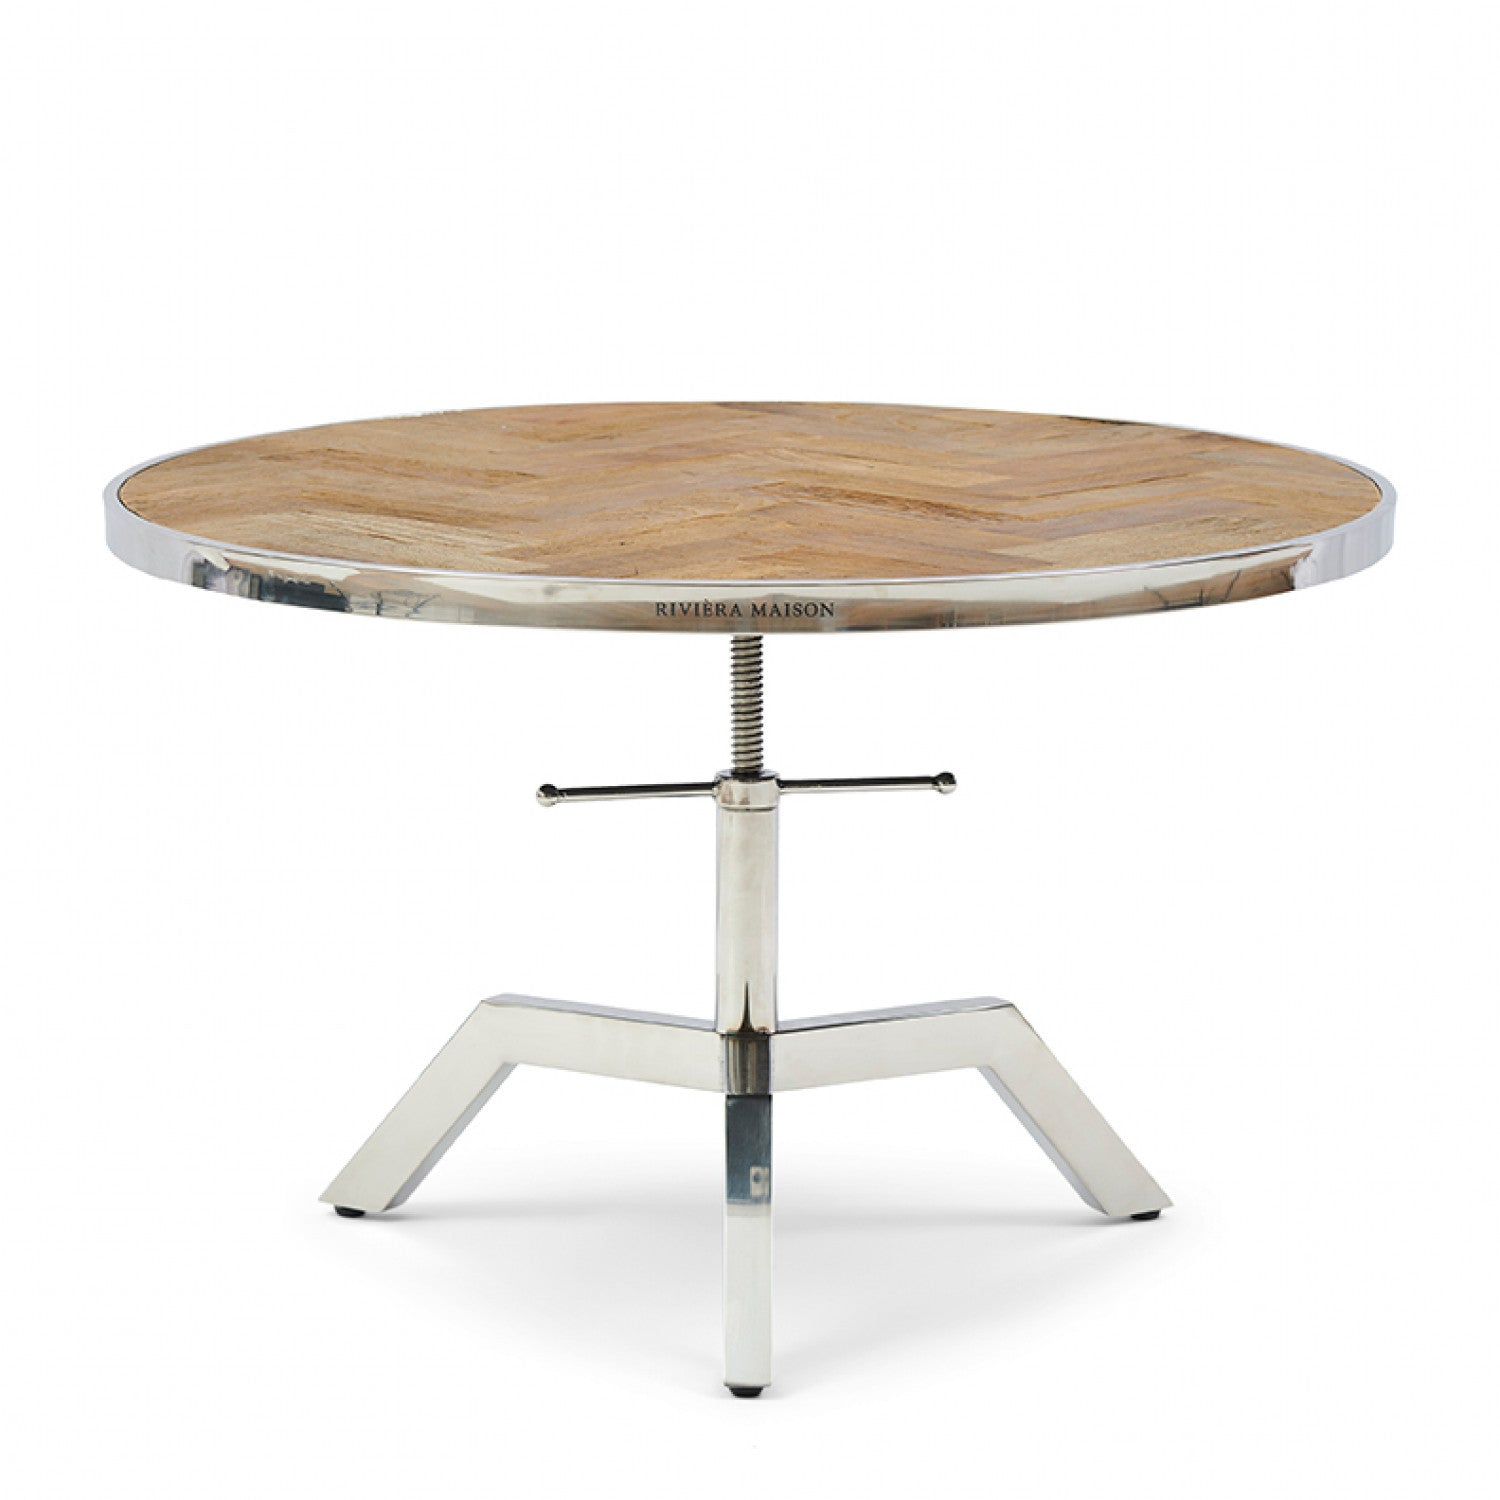 Kirkwood Adjustable Coffee Table Dia 80cm